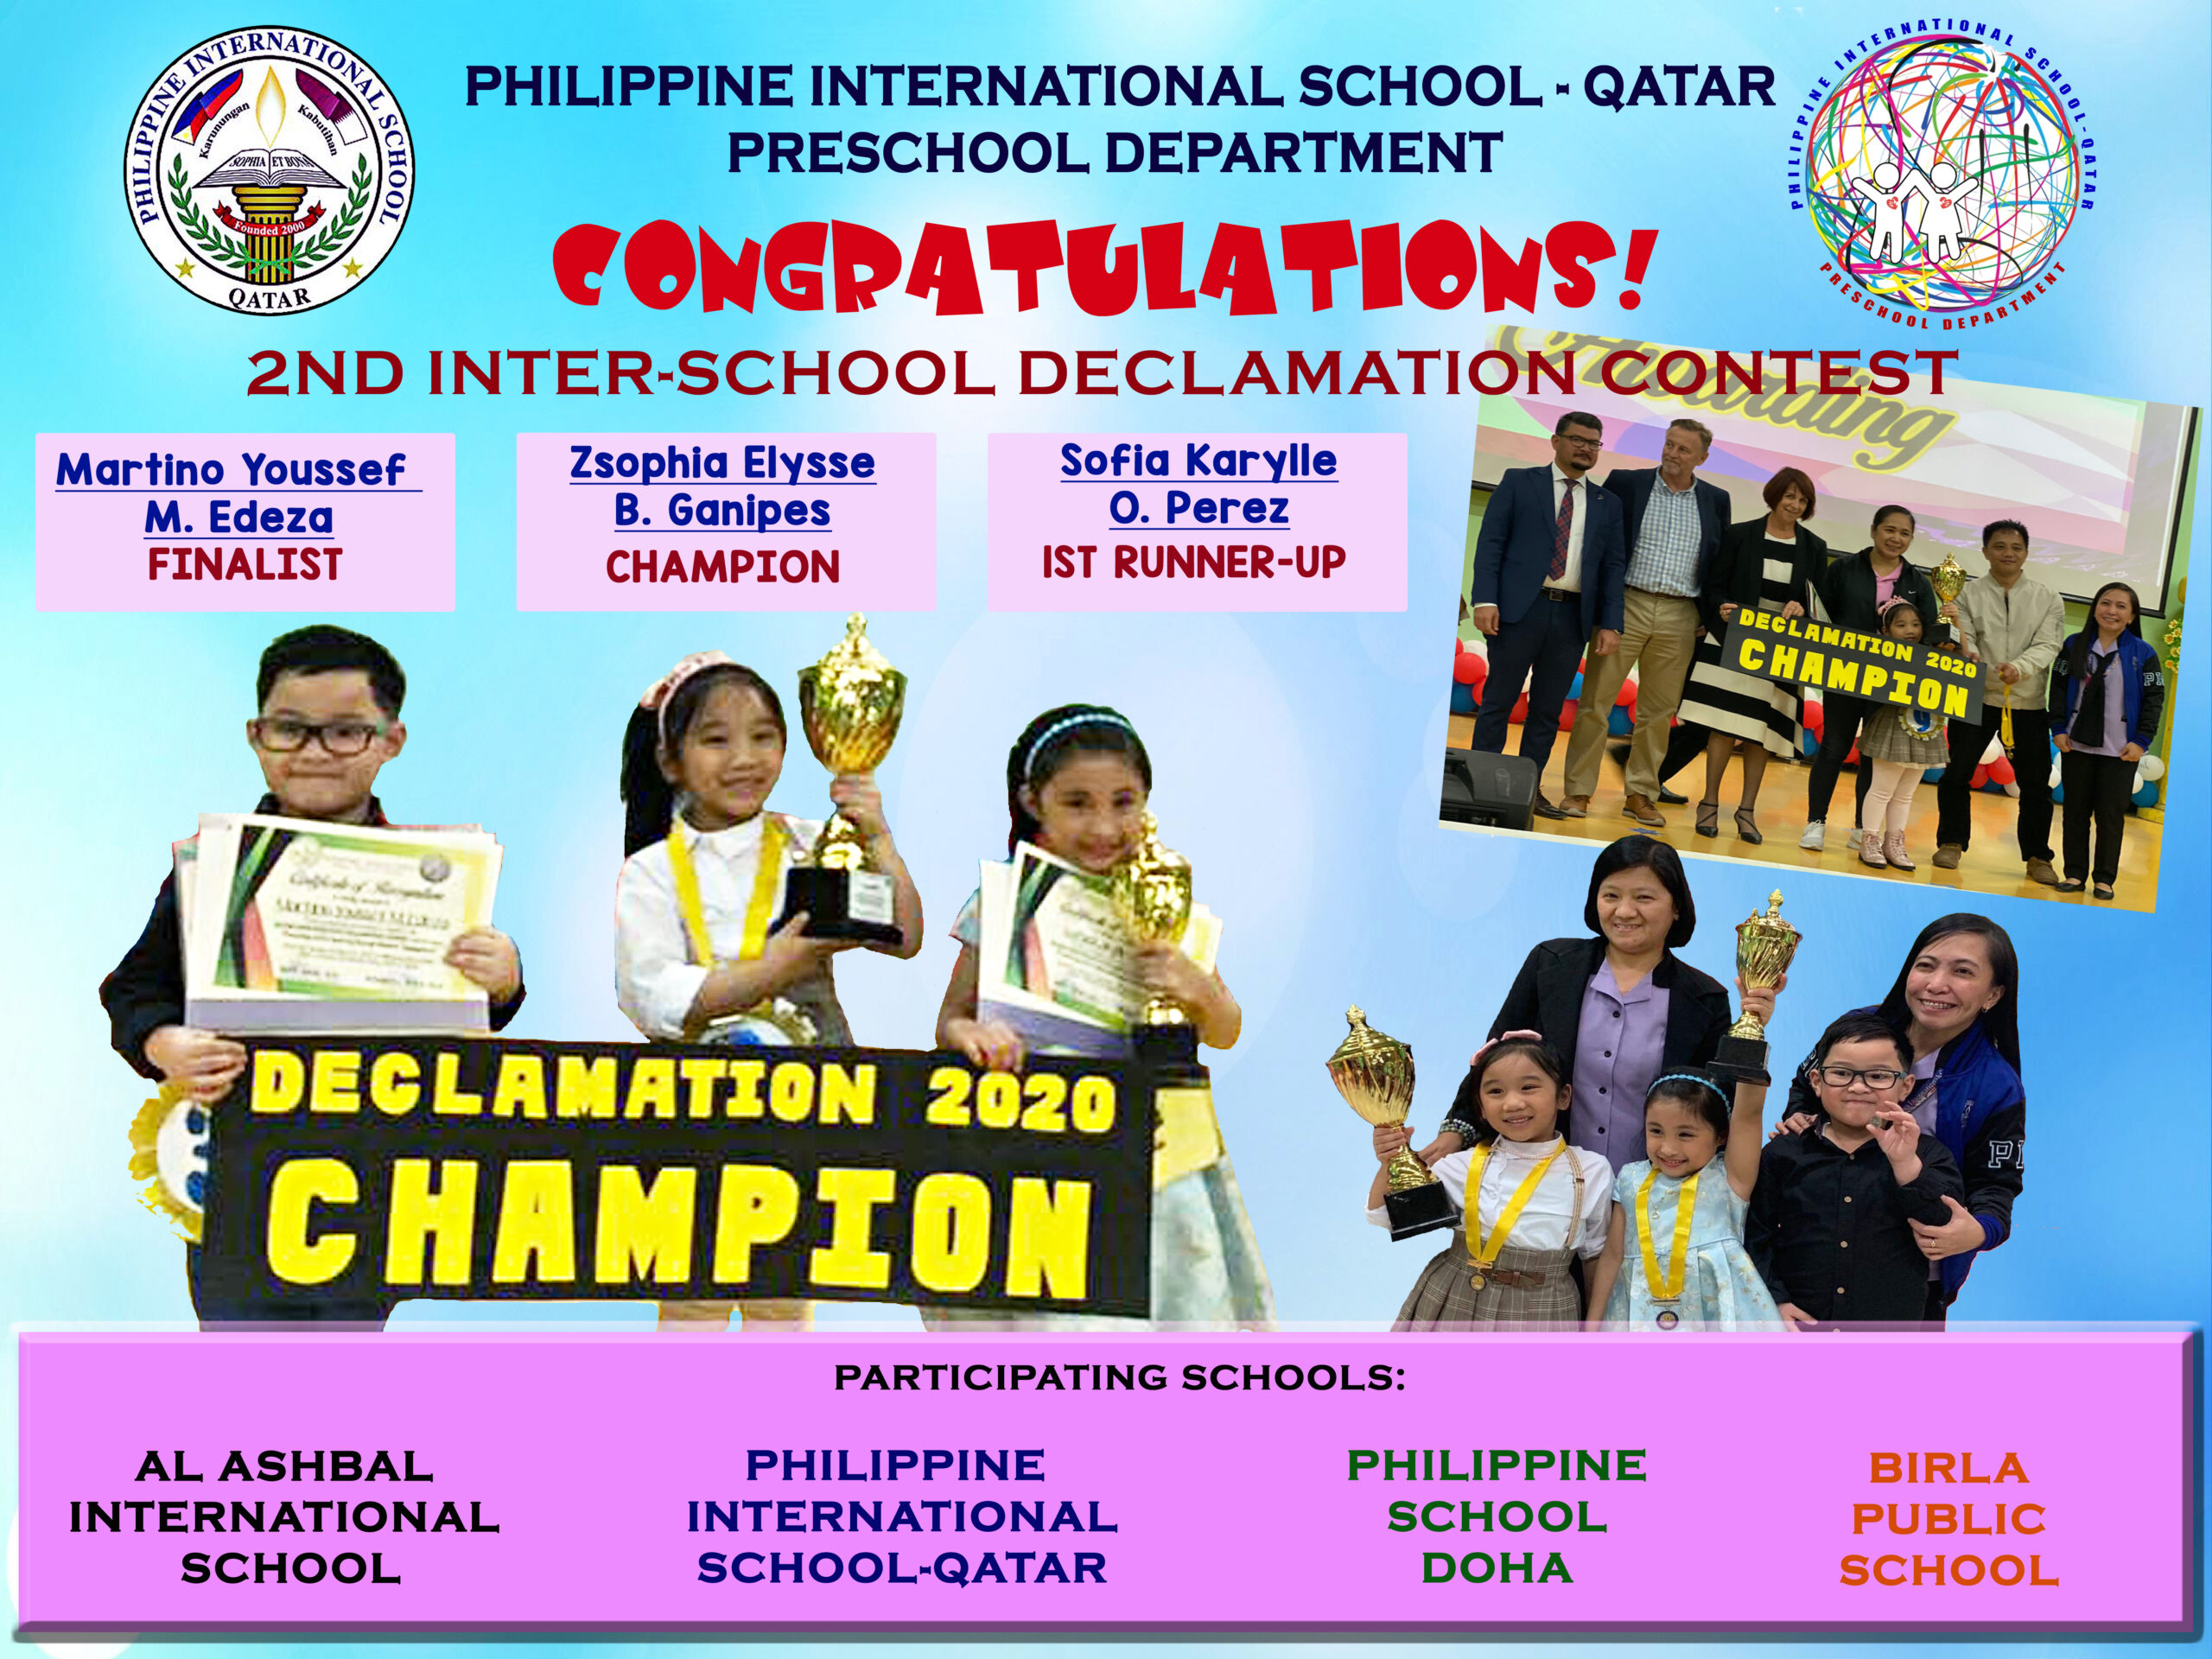 Achievements - PHILIPPINE INTERNATIONAL SCHOOL-QATAR